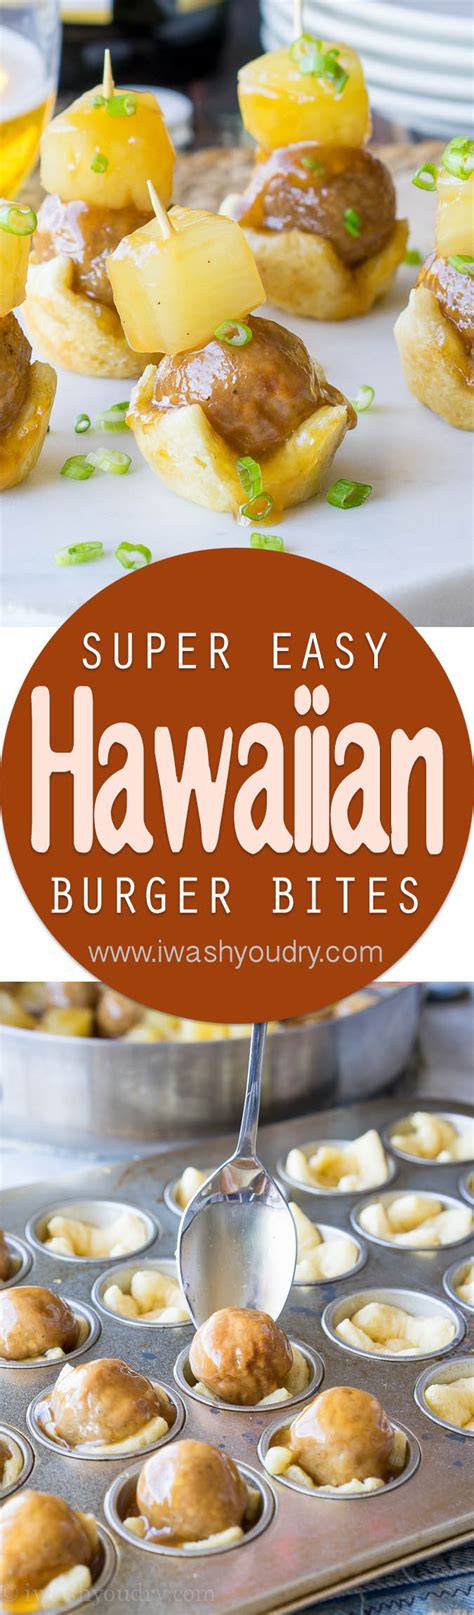 Hawaiian Burger Bites I Wash You Dry